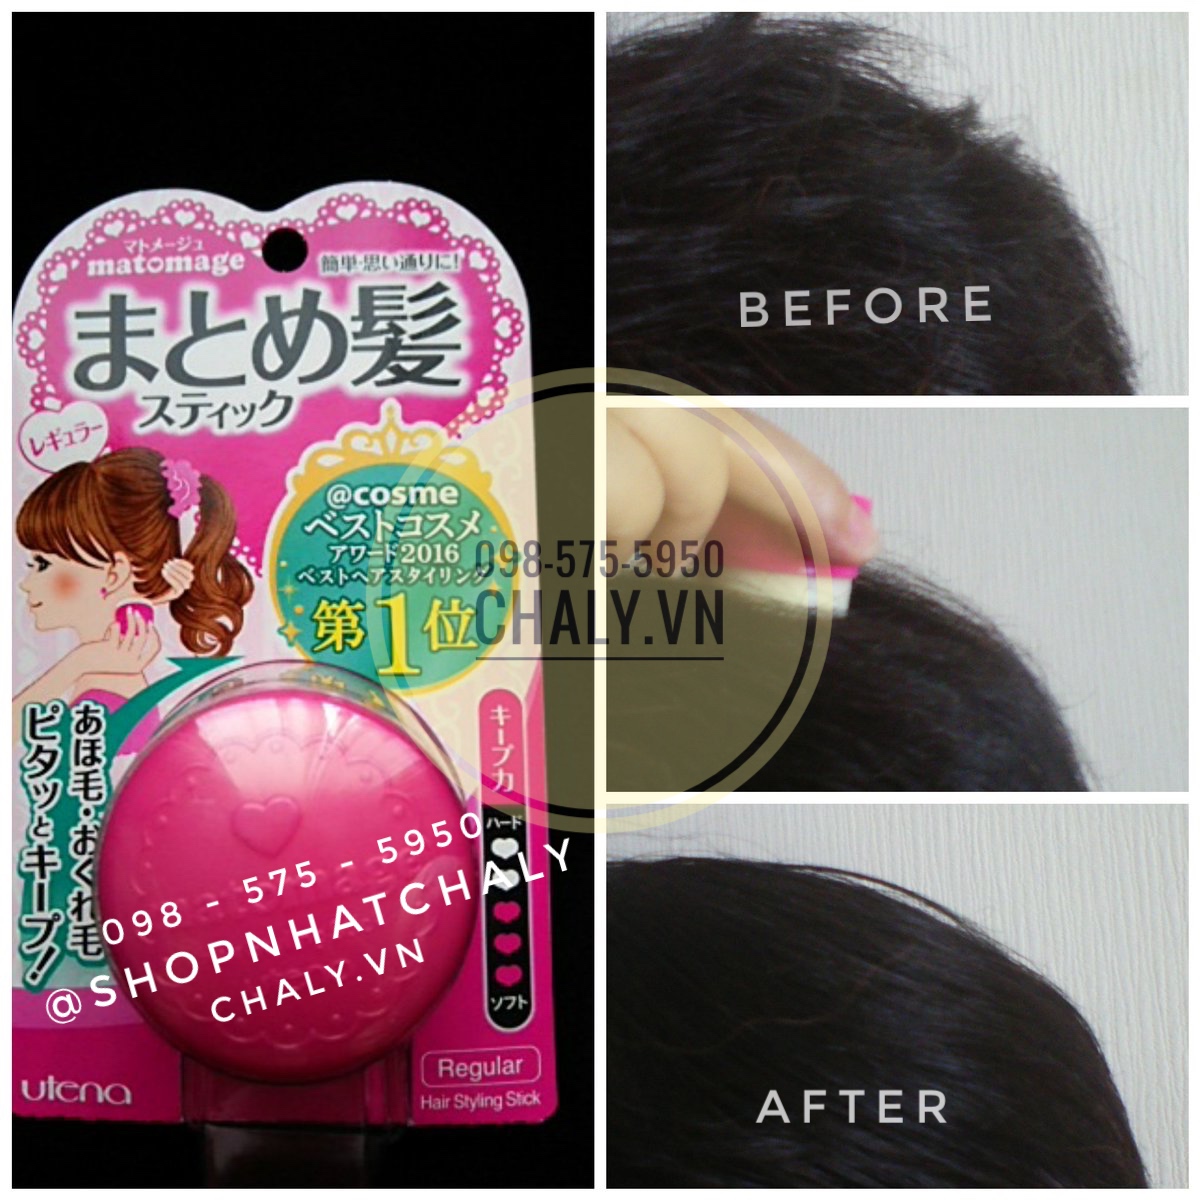 Sáp vuốt tóc của Nhật matomage màu hồng này dùng bao sướng, bao nhanh, không bẩn tay, không cần gội đầu nữa chứ